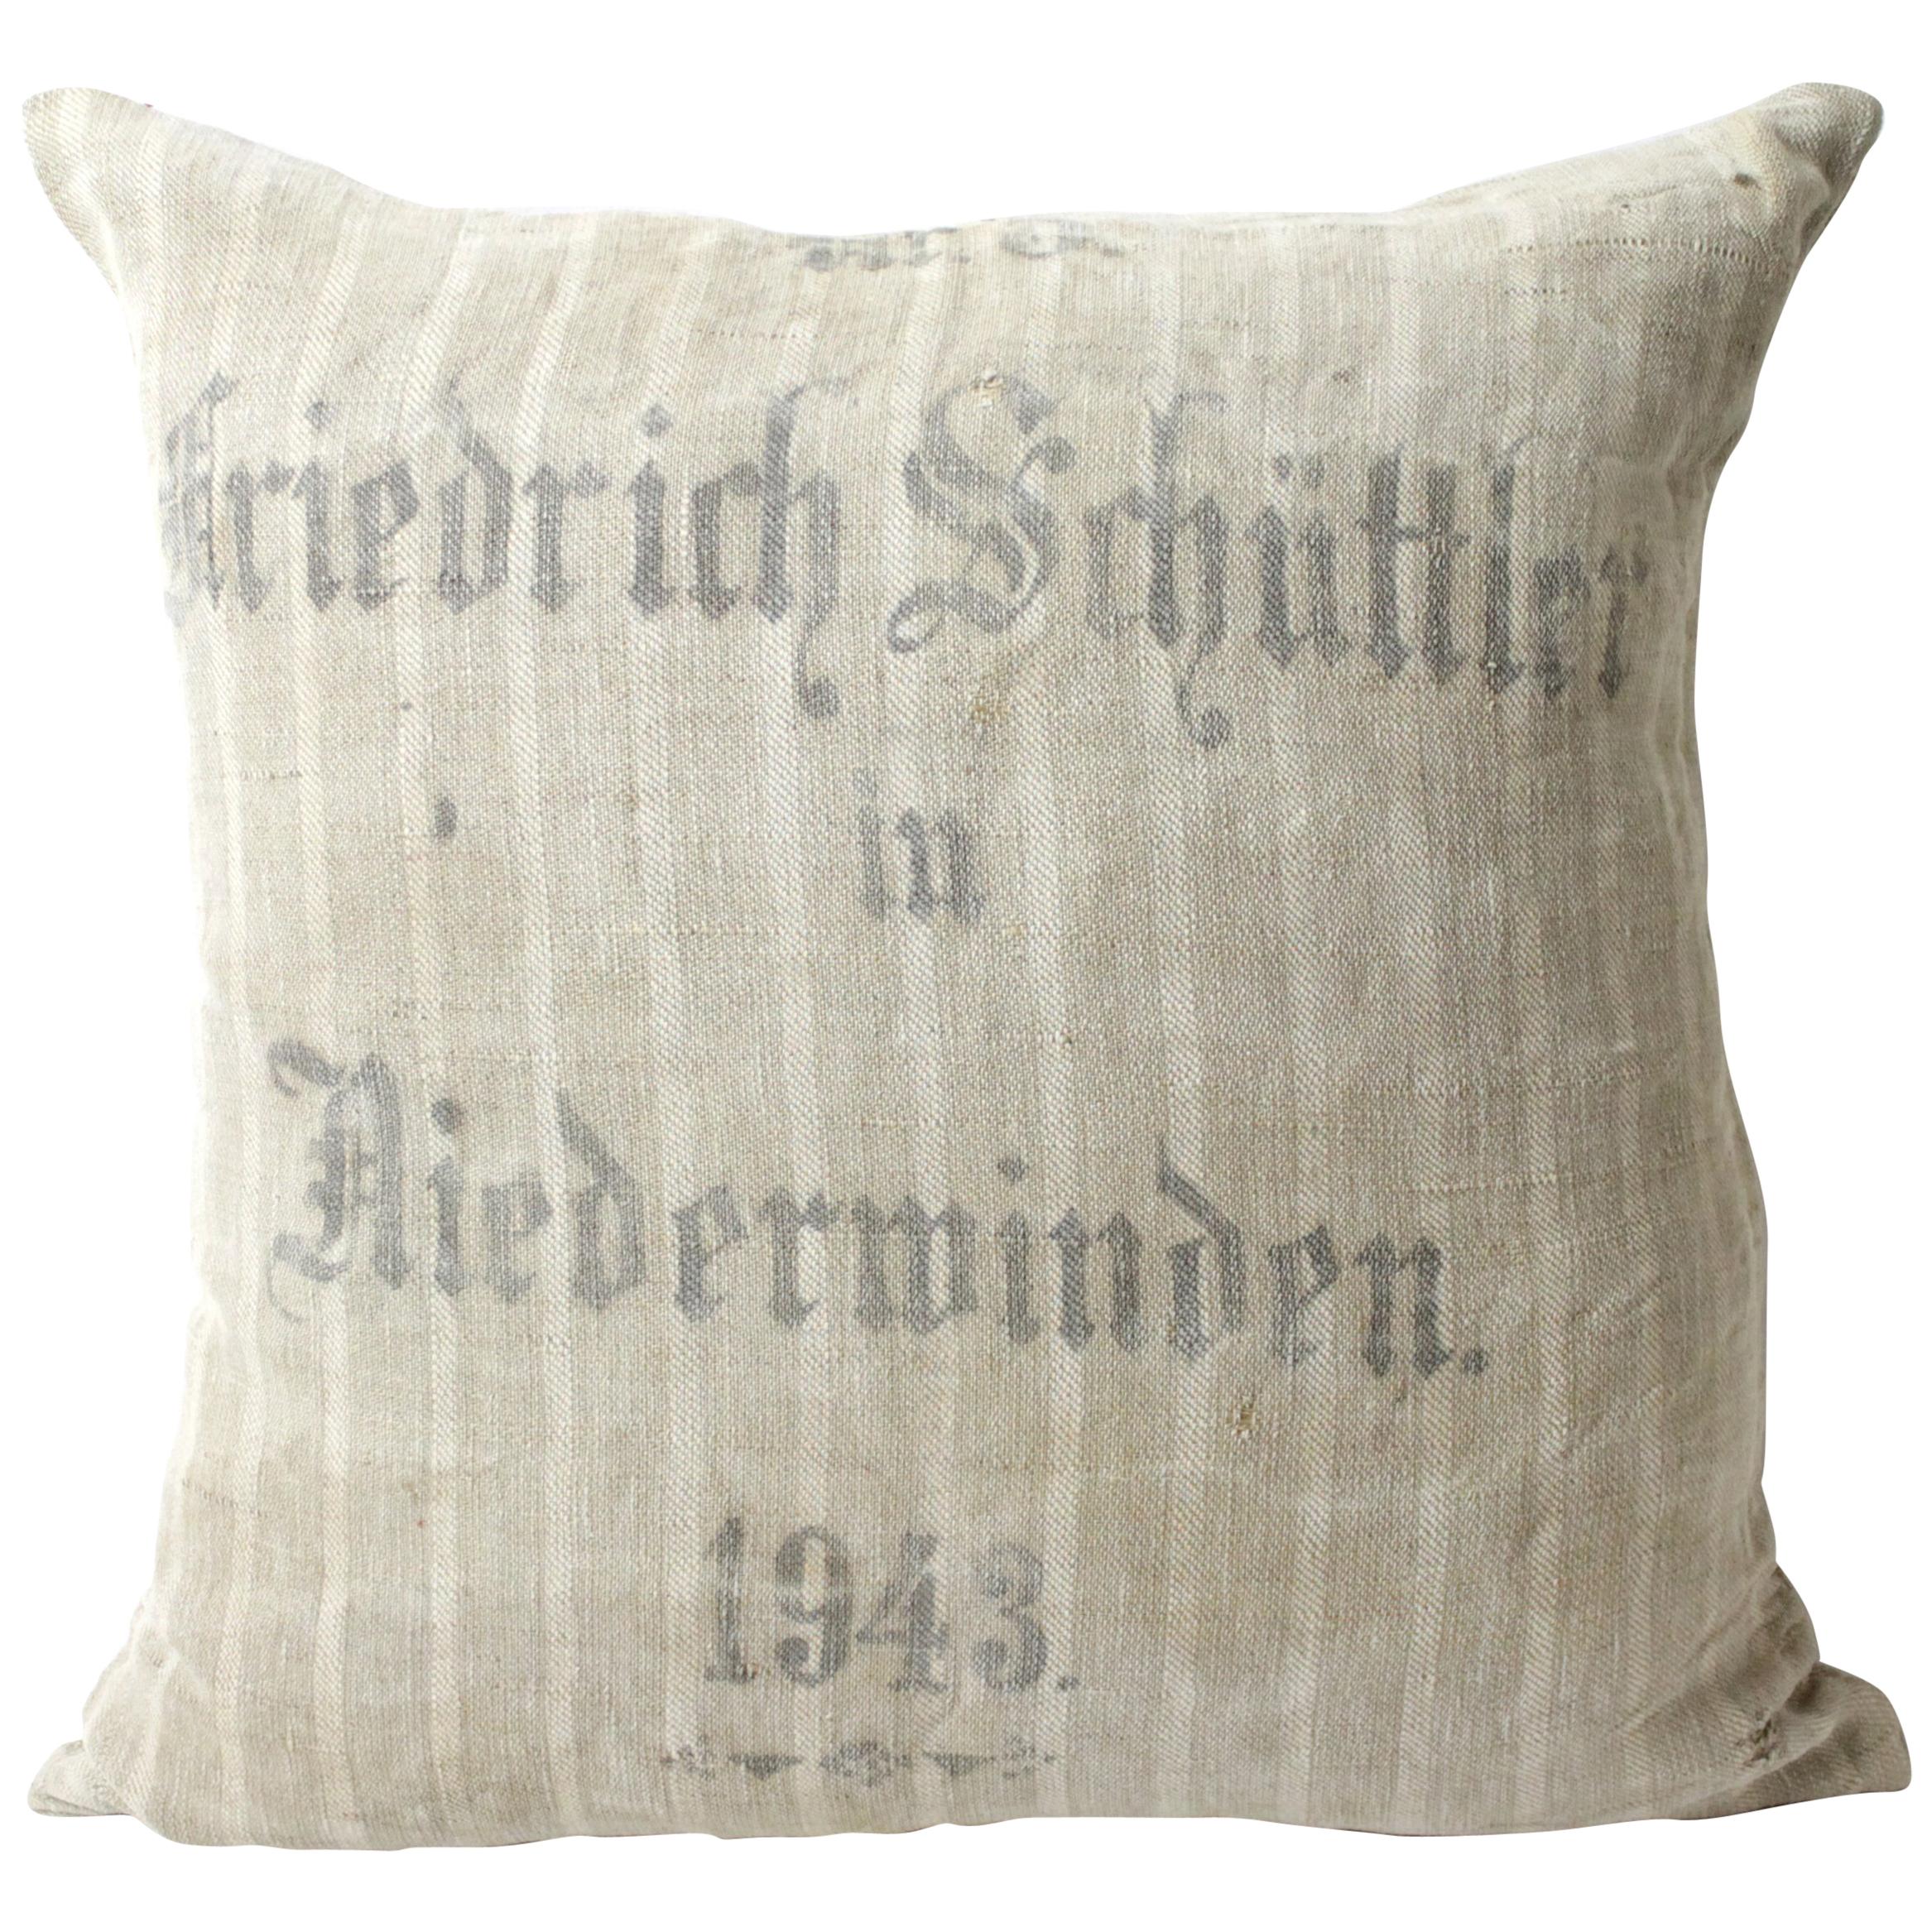 Original Antique Printed German Stripe Feed Sack Pillow